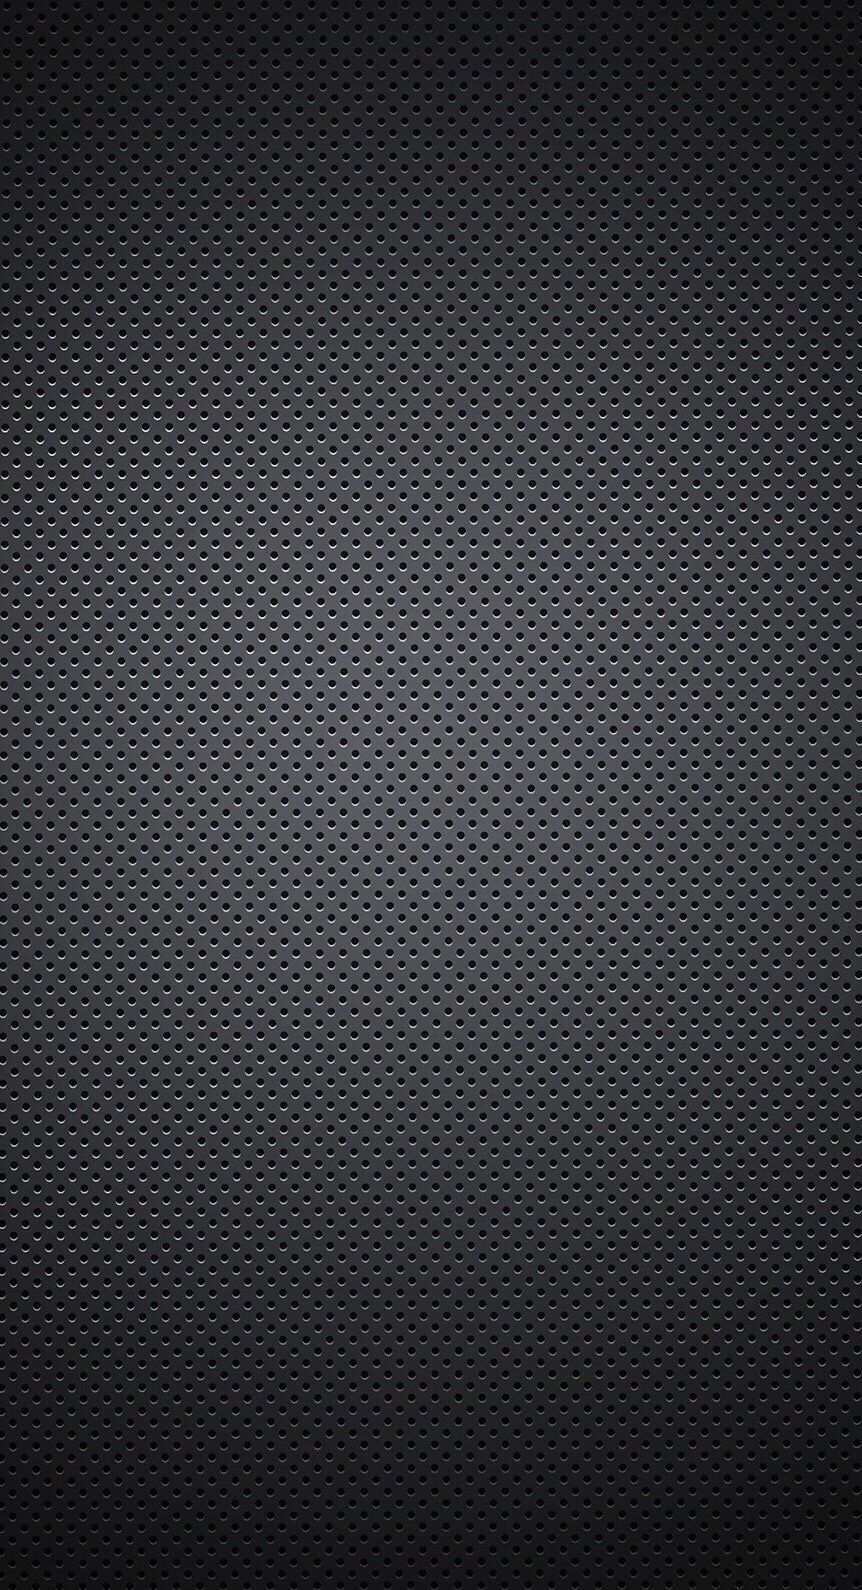 Black Iphone Iphonewallpaper Wallpaper Hintergrund Design Handy Hintergrund Wallpaper Bilder